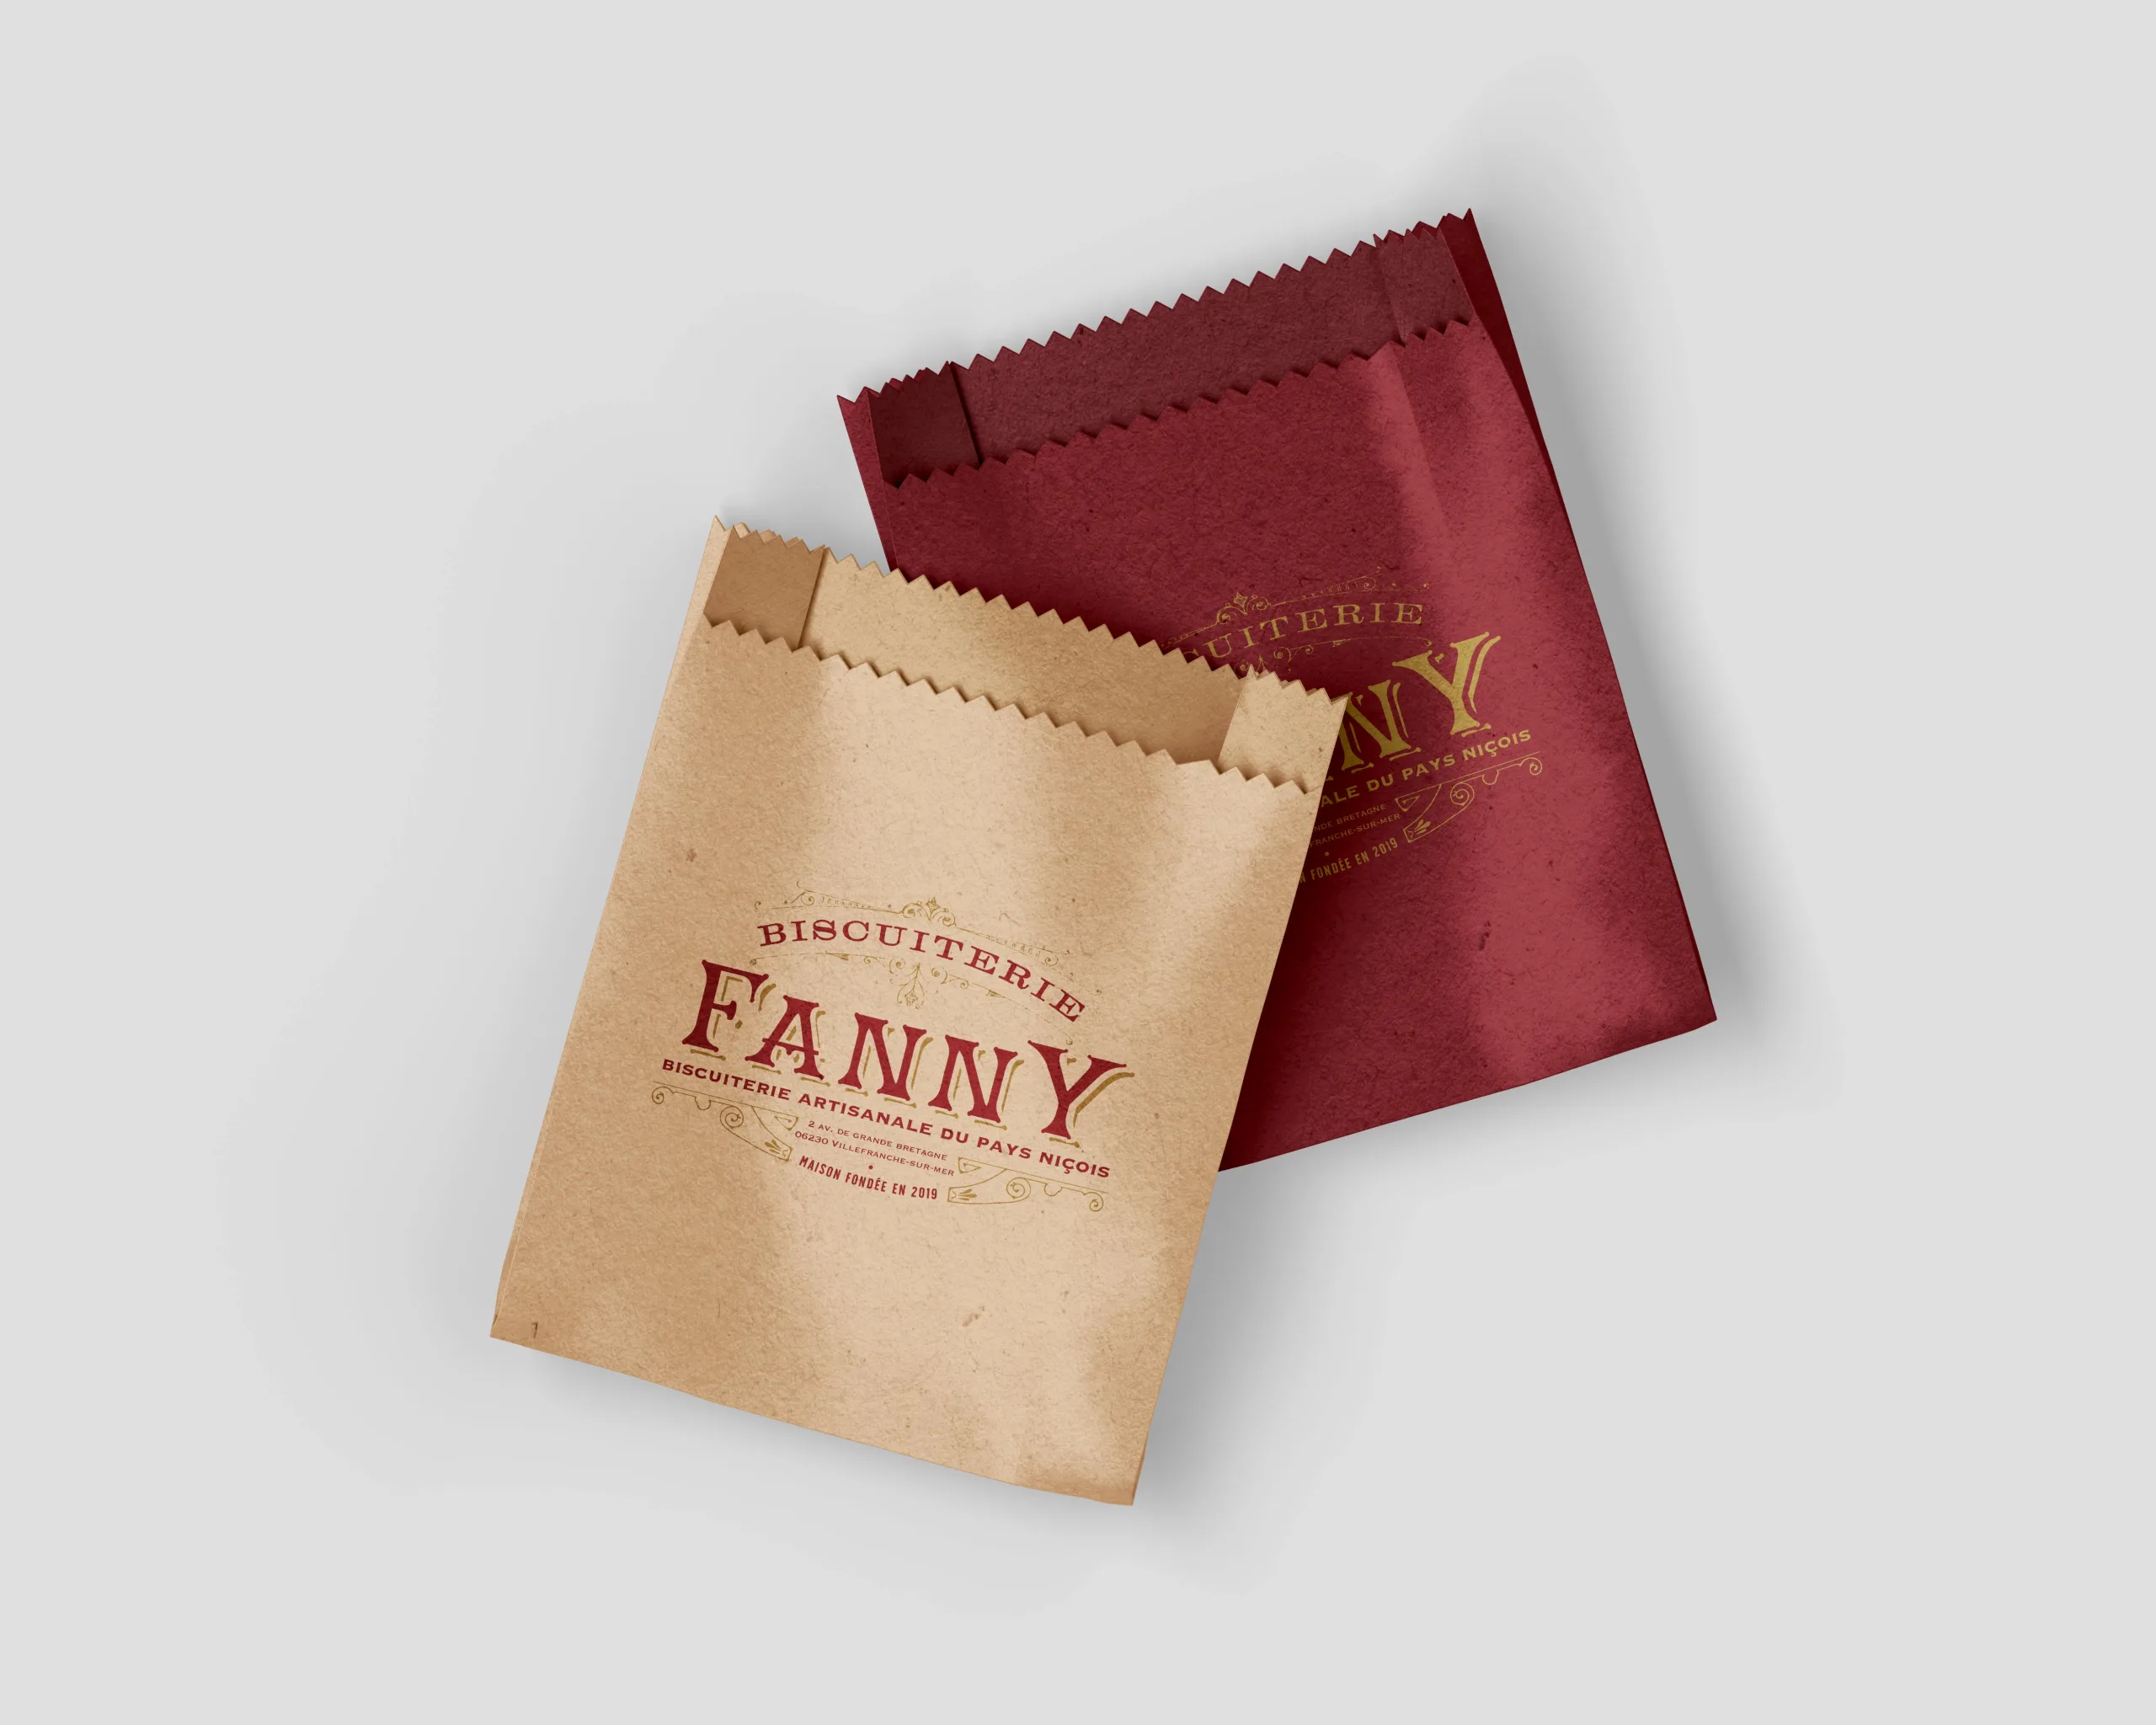 SLUSH - Sacs pour la Biscuiterie Fanny